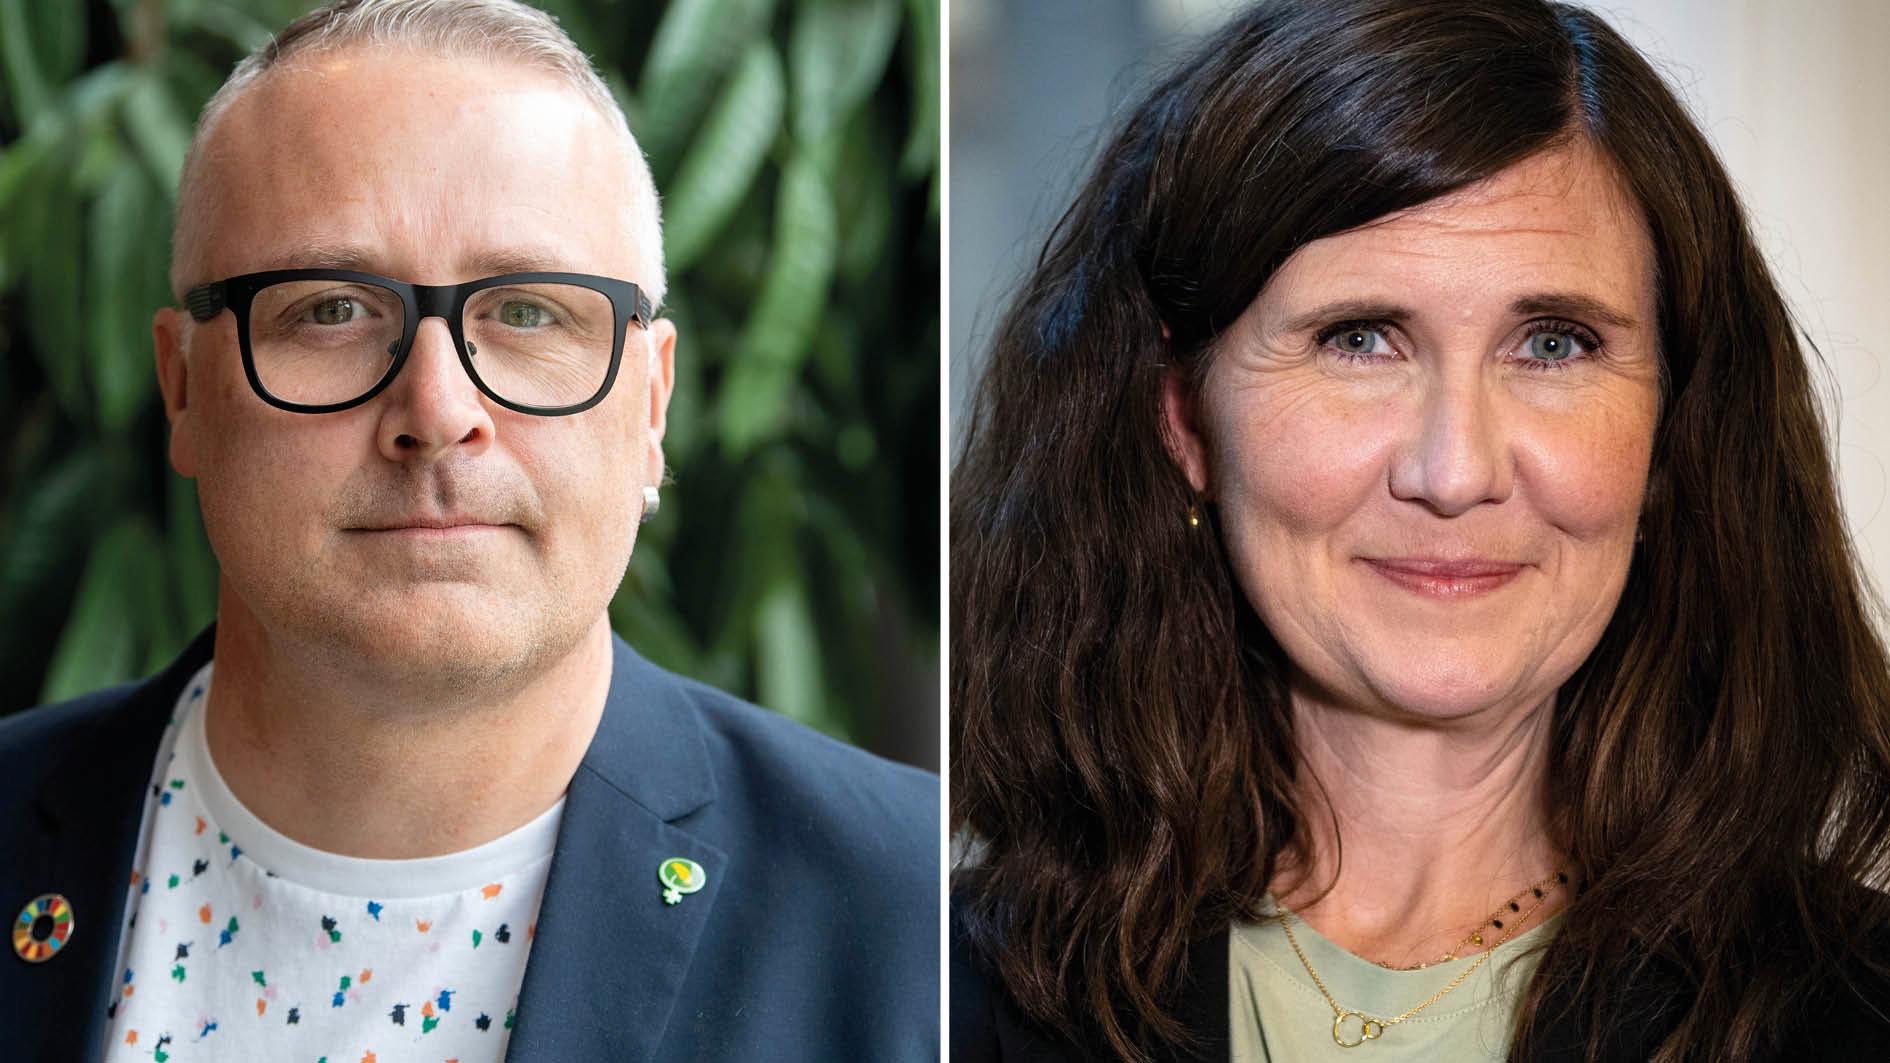 Stenevi och Wåhlin är en stark duo som kan bygga förtroende för ett miljöparti som kombinerar kampen för klimat- och miljö med de rättighetsperspektiv som är avgörande för att det gröna samhällsbygget ska bli just rättvist, skriver 52 MP-politiker inför språkrörsvalet på lördag.